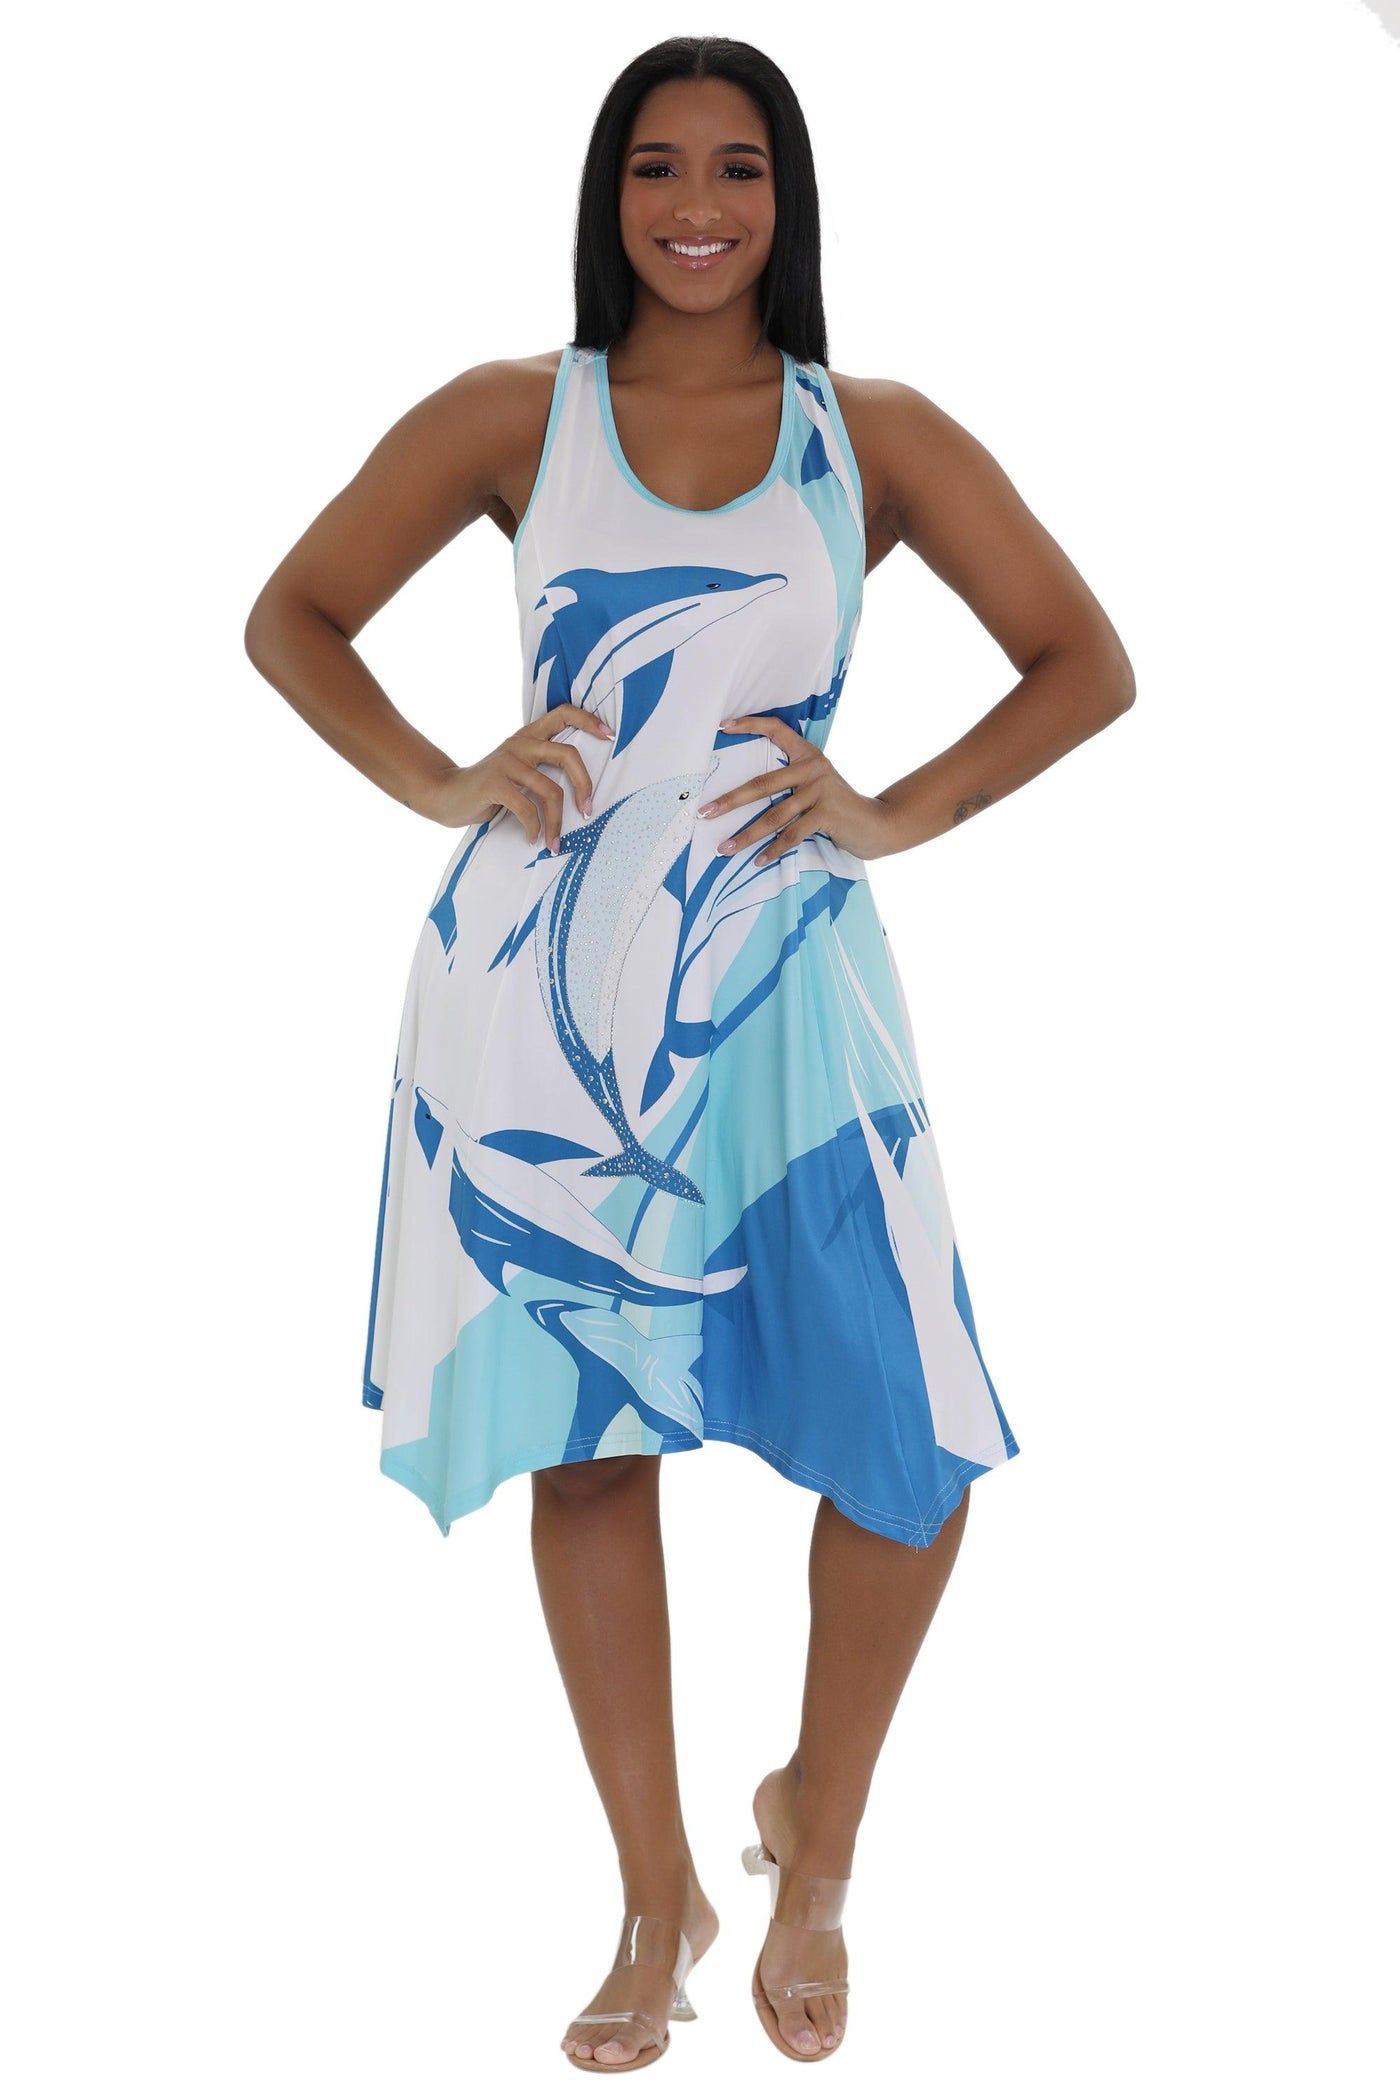 Dolphin Print Resort Dress 21228  - Advance Apparels Inc